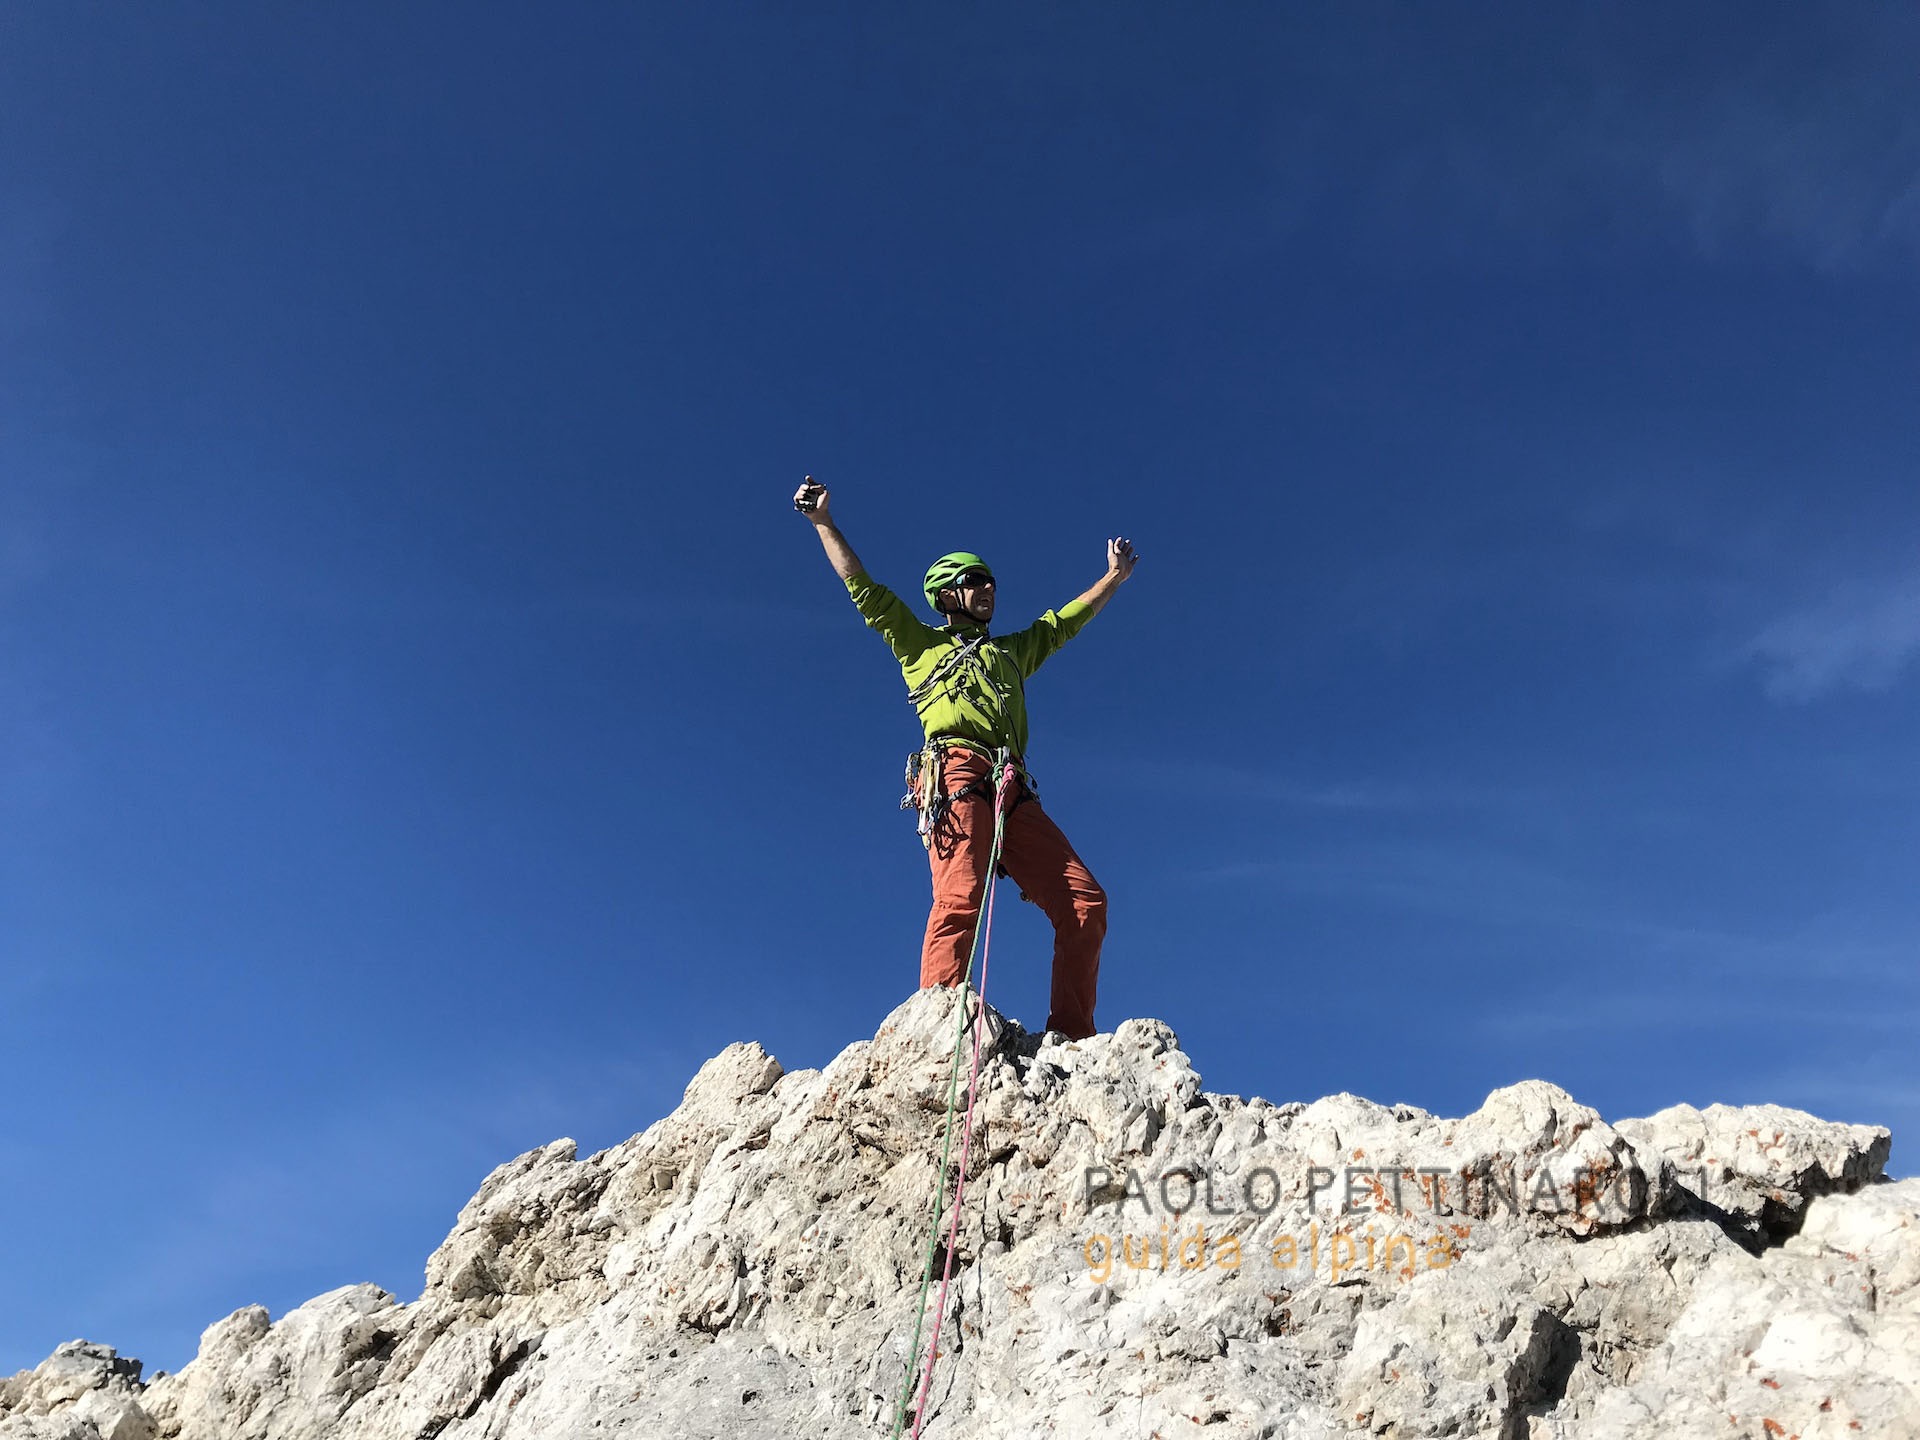 dolomiti - 2 di 6-arrampicata_paolo pettinaroli guida alpina